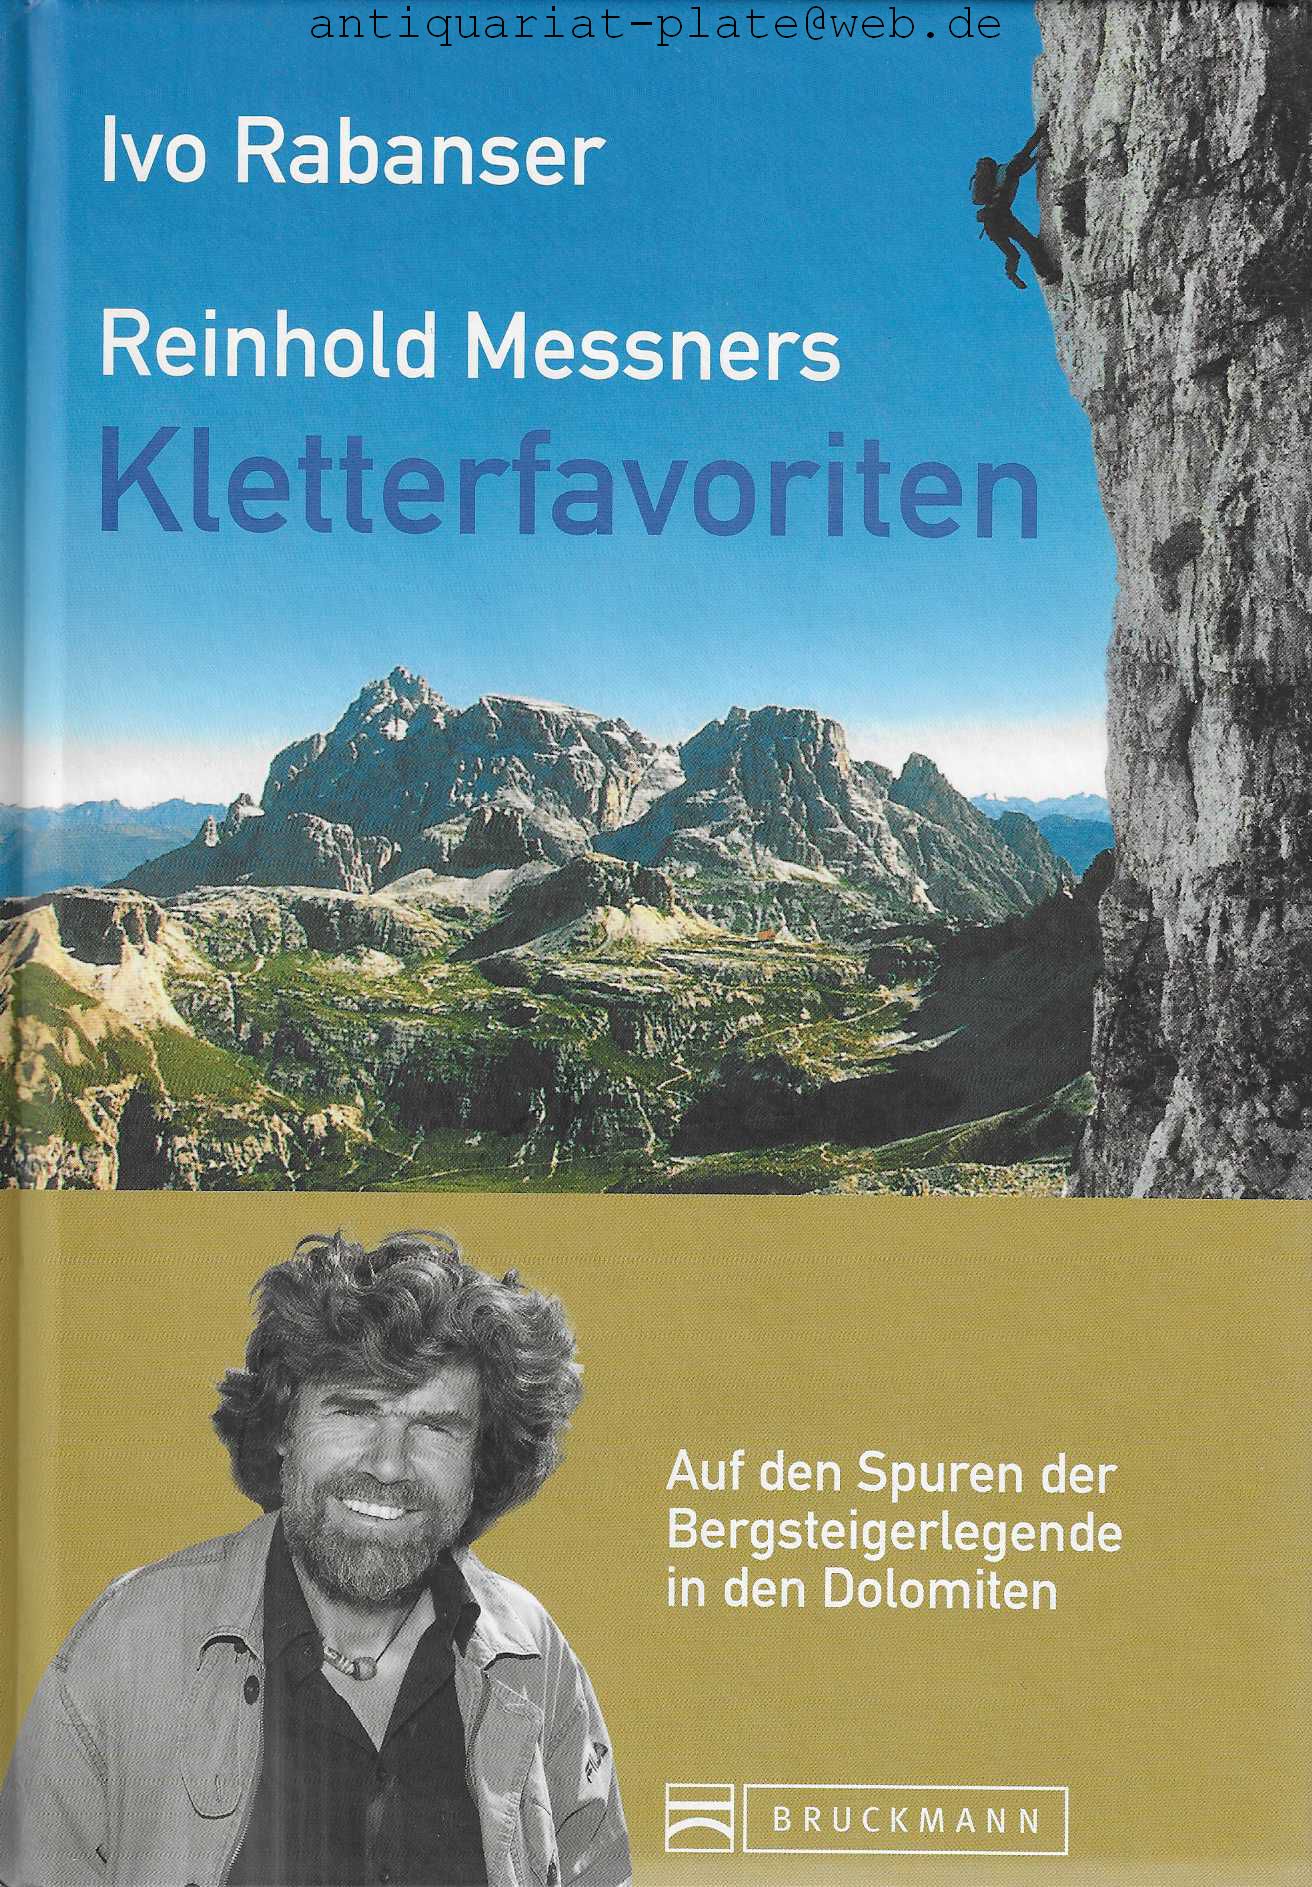 Reinhold Messners Kletterfavoriten. Auf den Spuren der Bergsteigerlegende in den Dolomiten. - Rabanser Ivo